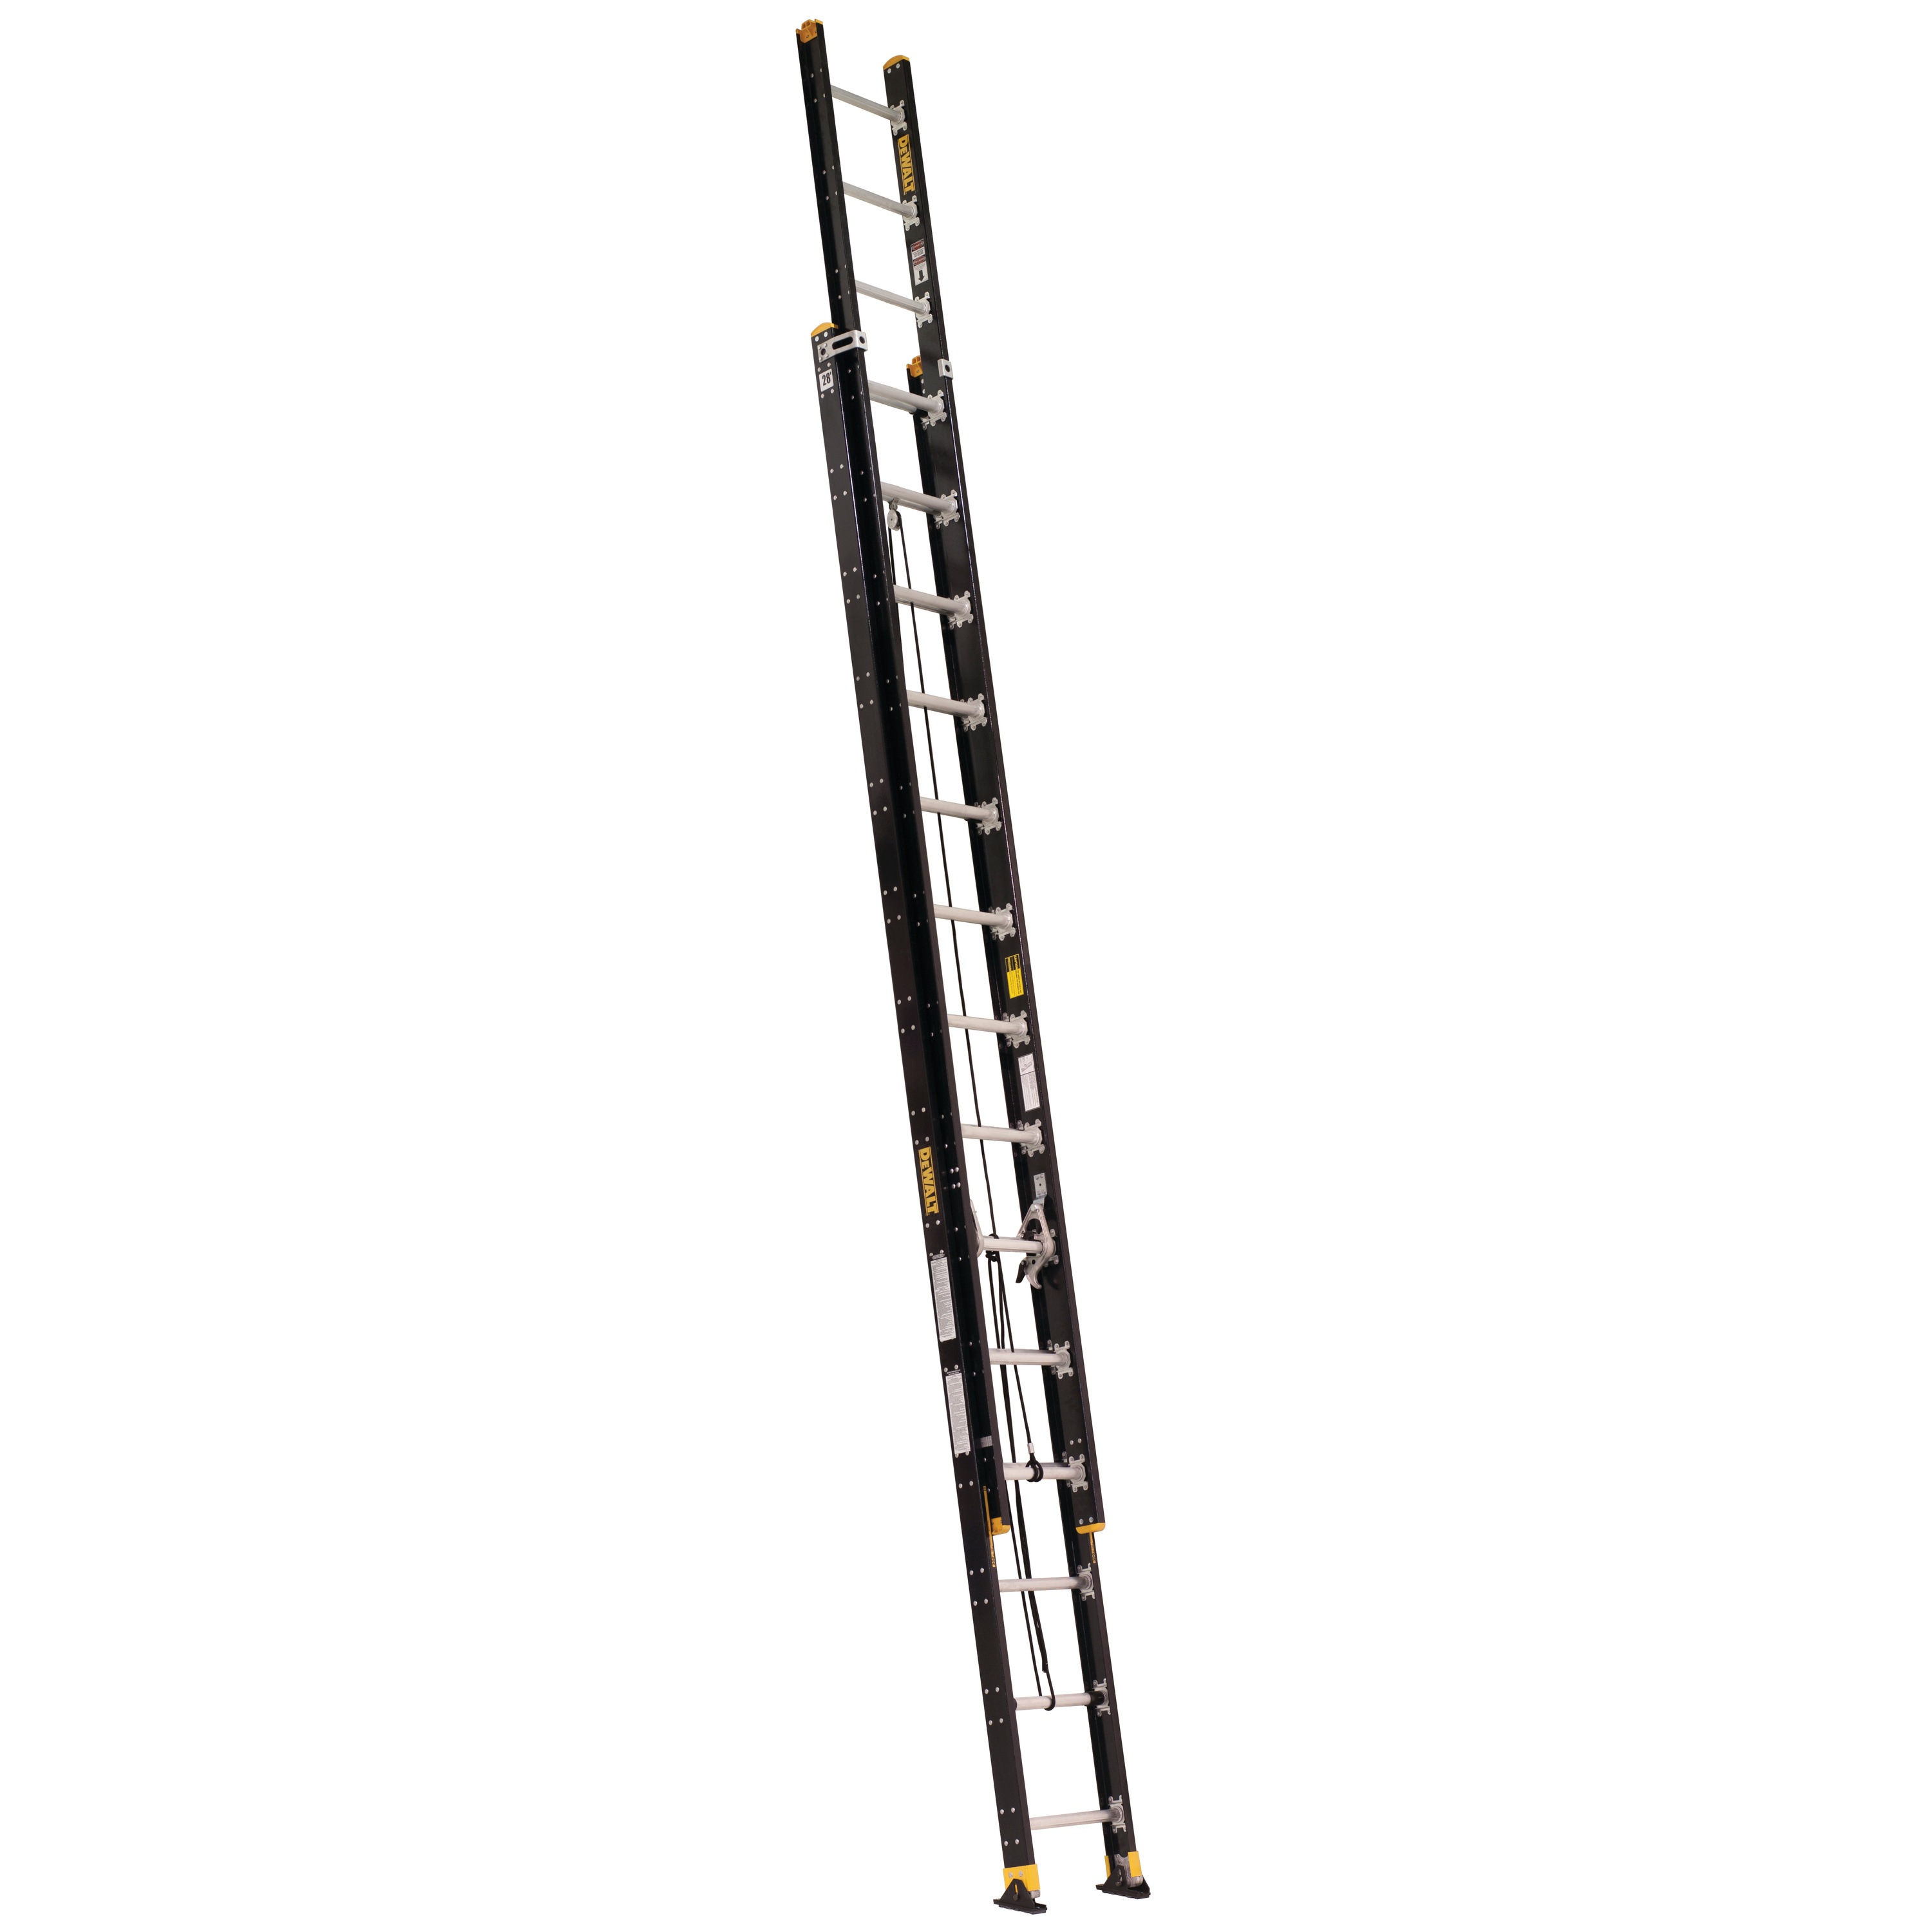 24 foot Lightweight Fiberglass Extension Ladder.